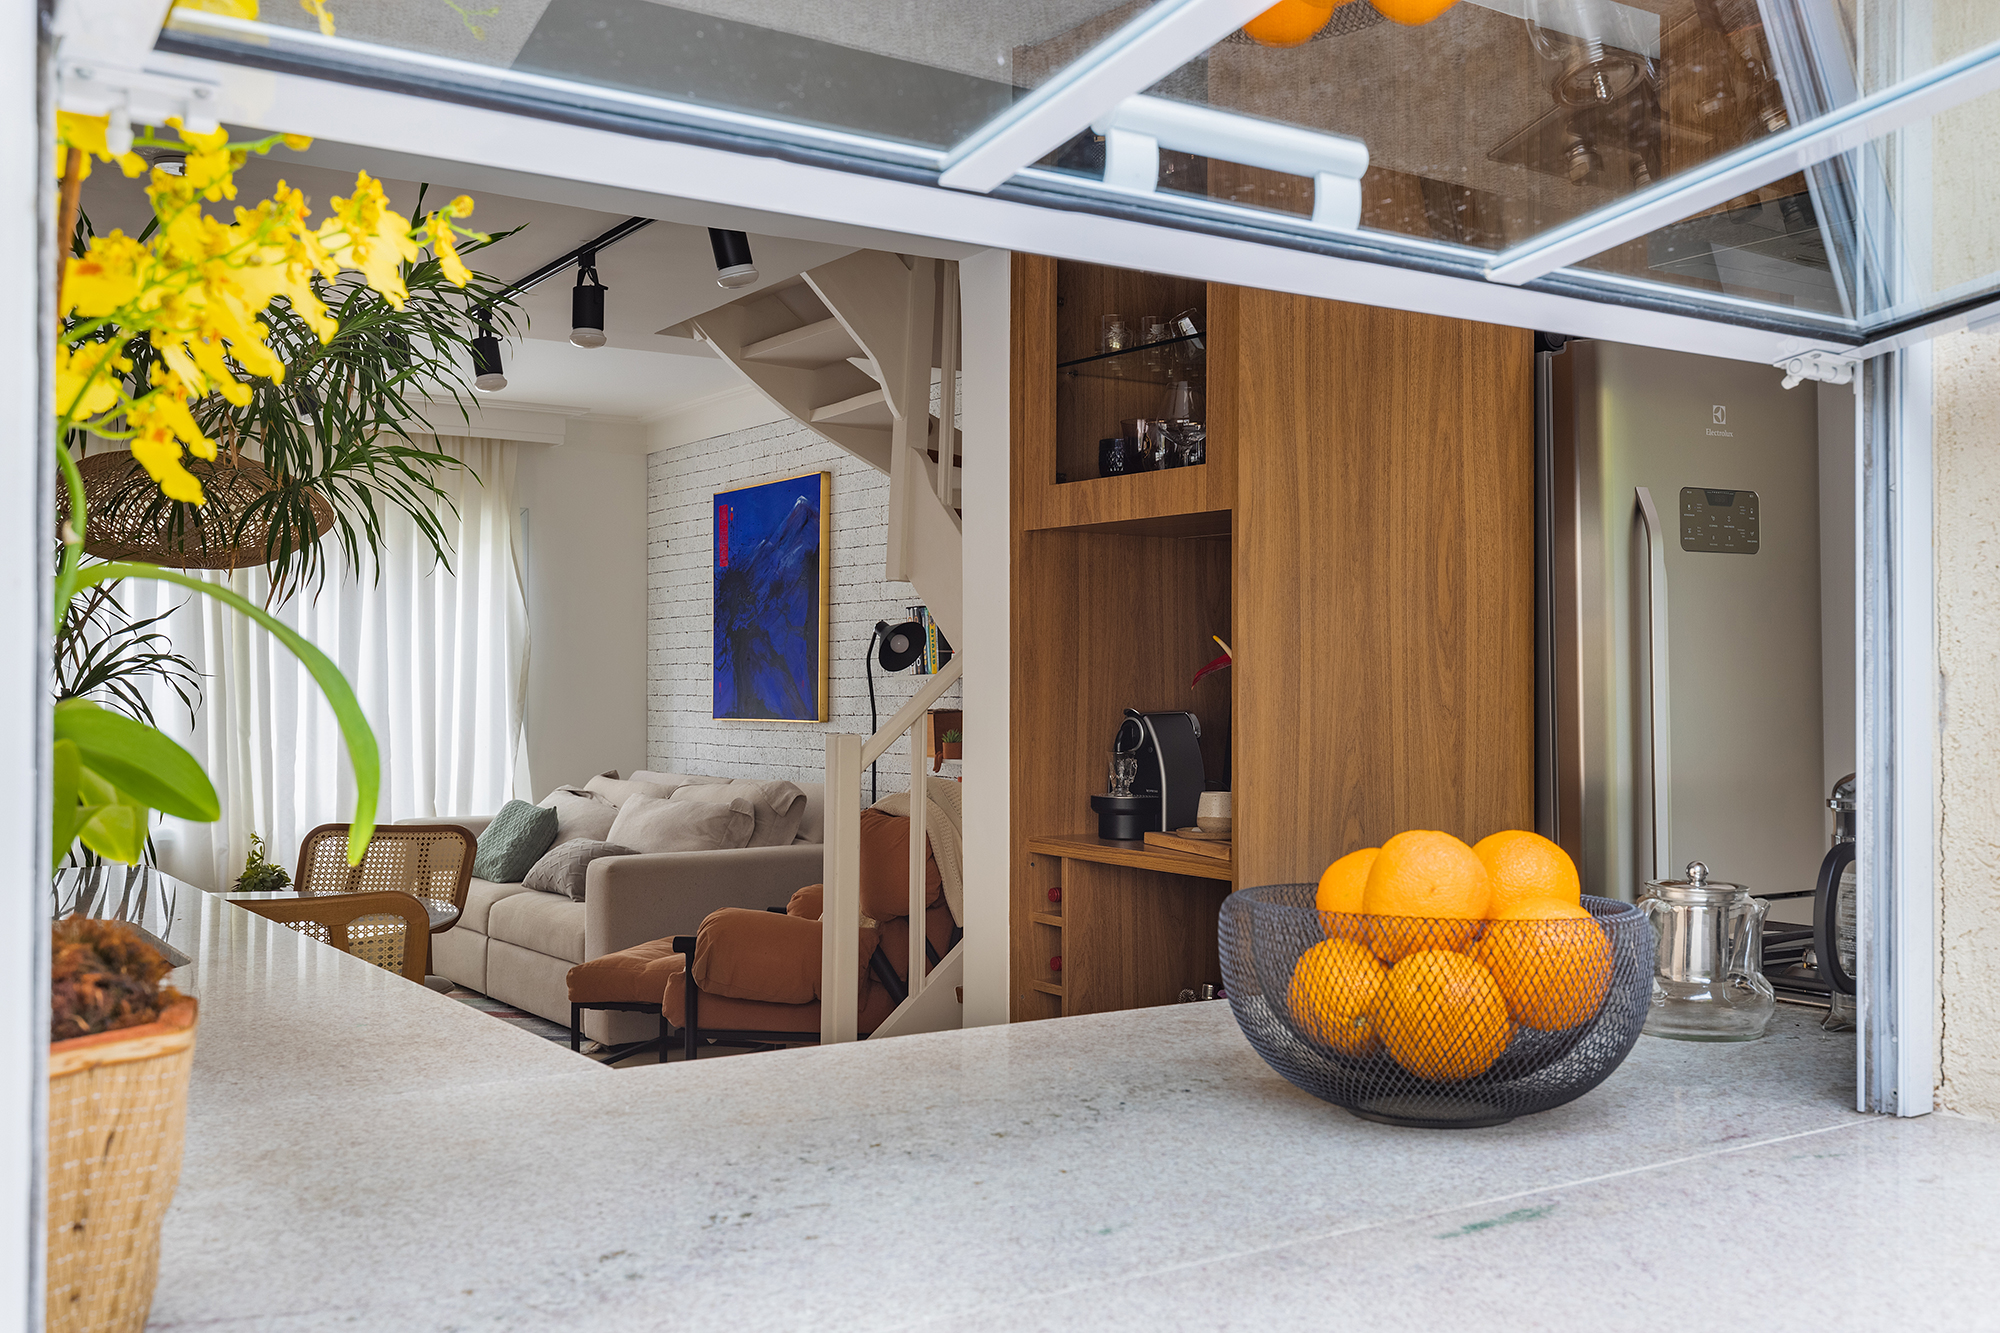 Reforma de casa de 90 m² cria um lar alegre, integrado e colorido